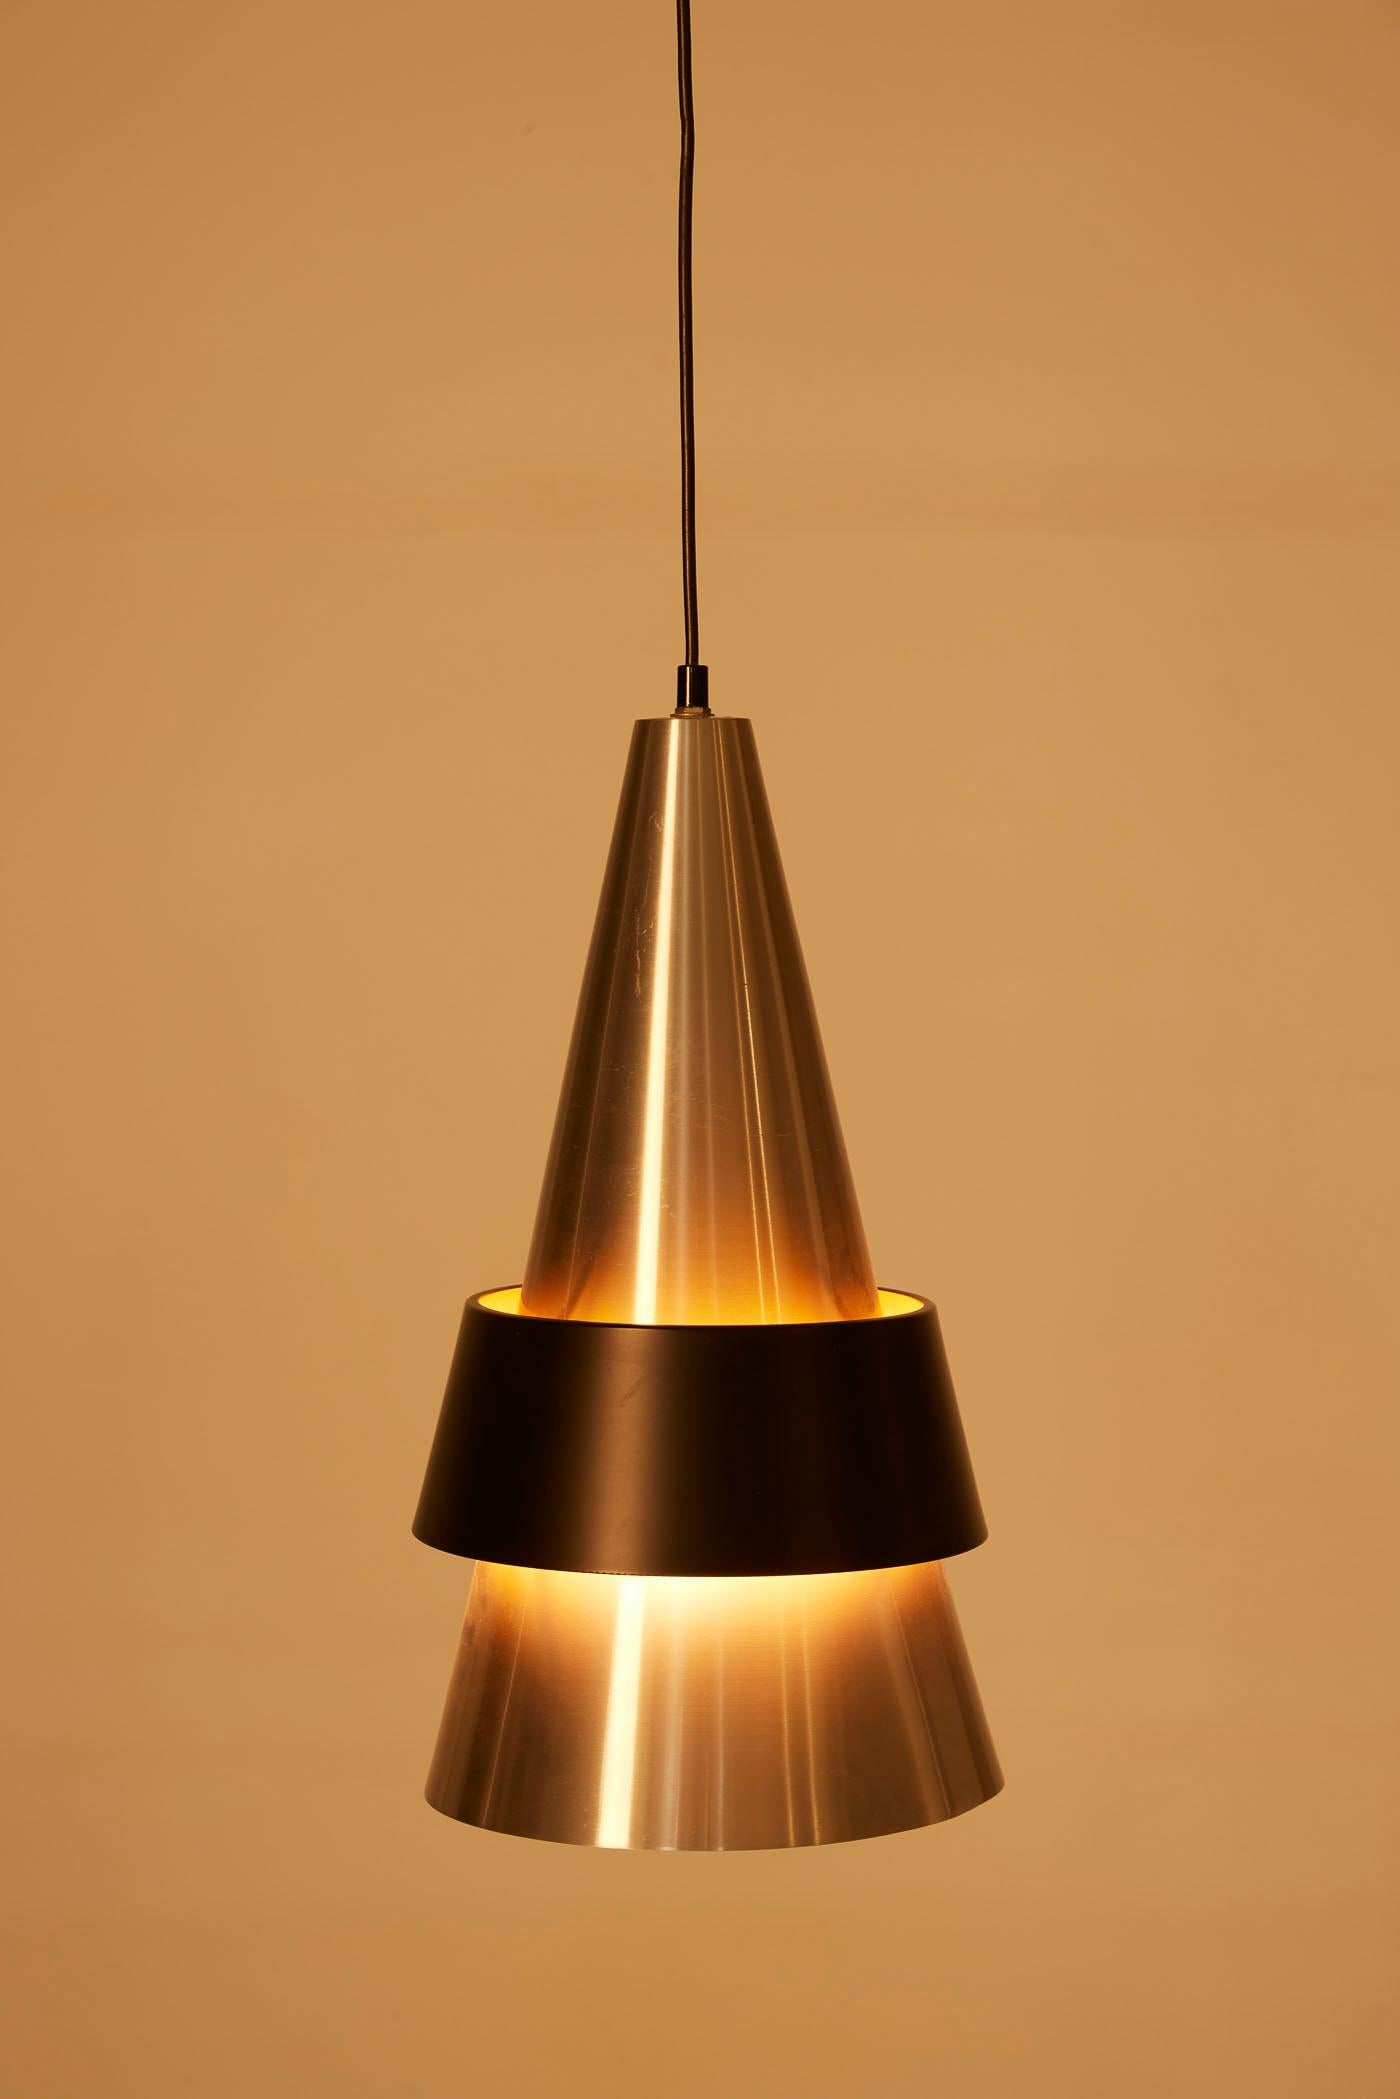 Corona-Pendelleuchte des dänischen Designers Jo Hammerborg für Fog & Mørup, aus den 1960er Jahren. Der konische Reflektor ist aus gebürstetem Metall mit einem schwarz lackierten Metallring gefertigt. Sehr guter Zustand.
DV429